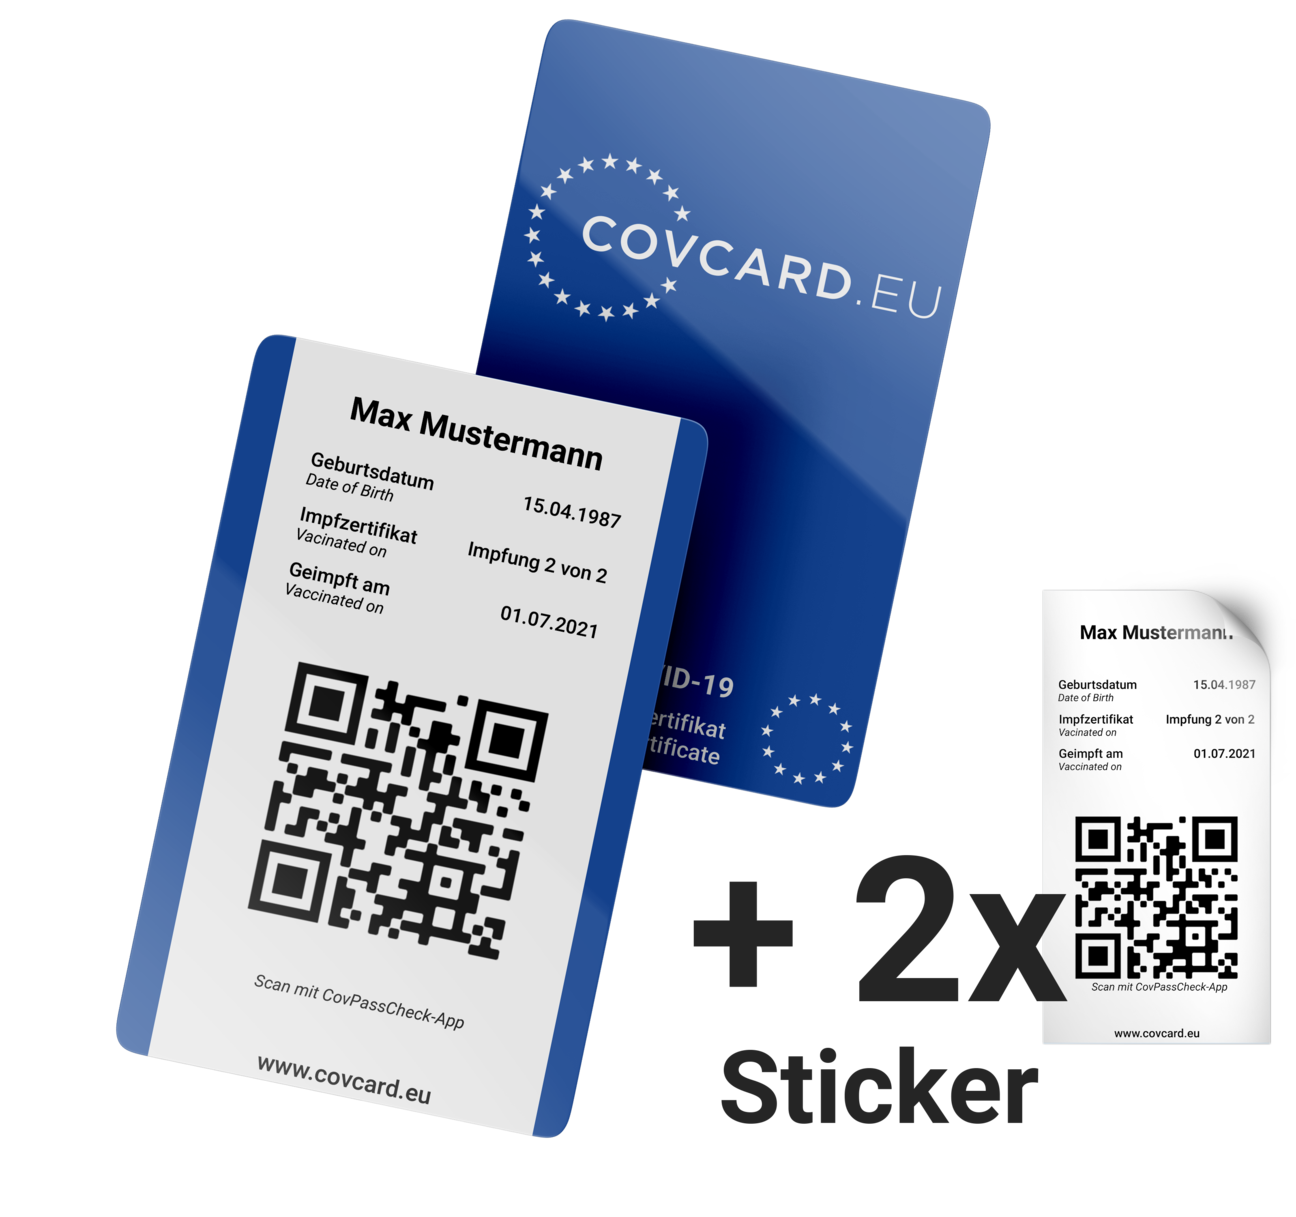 Bild der Covcard, dem Corona-Nachweis im Scheckkarten-Format